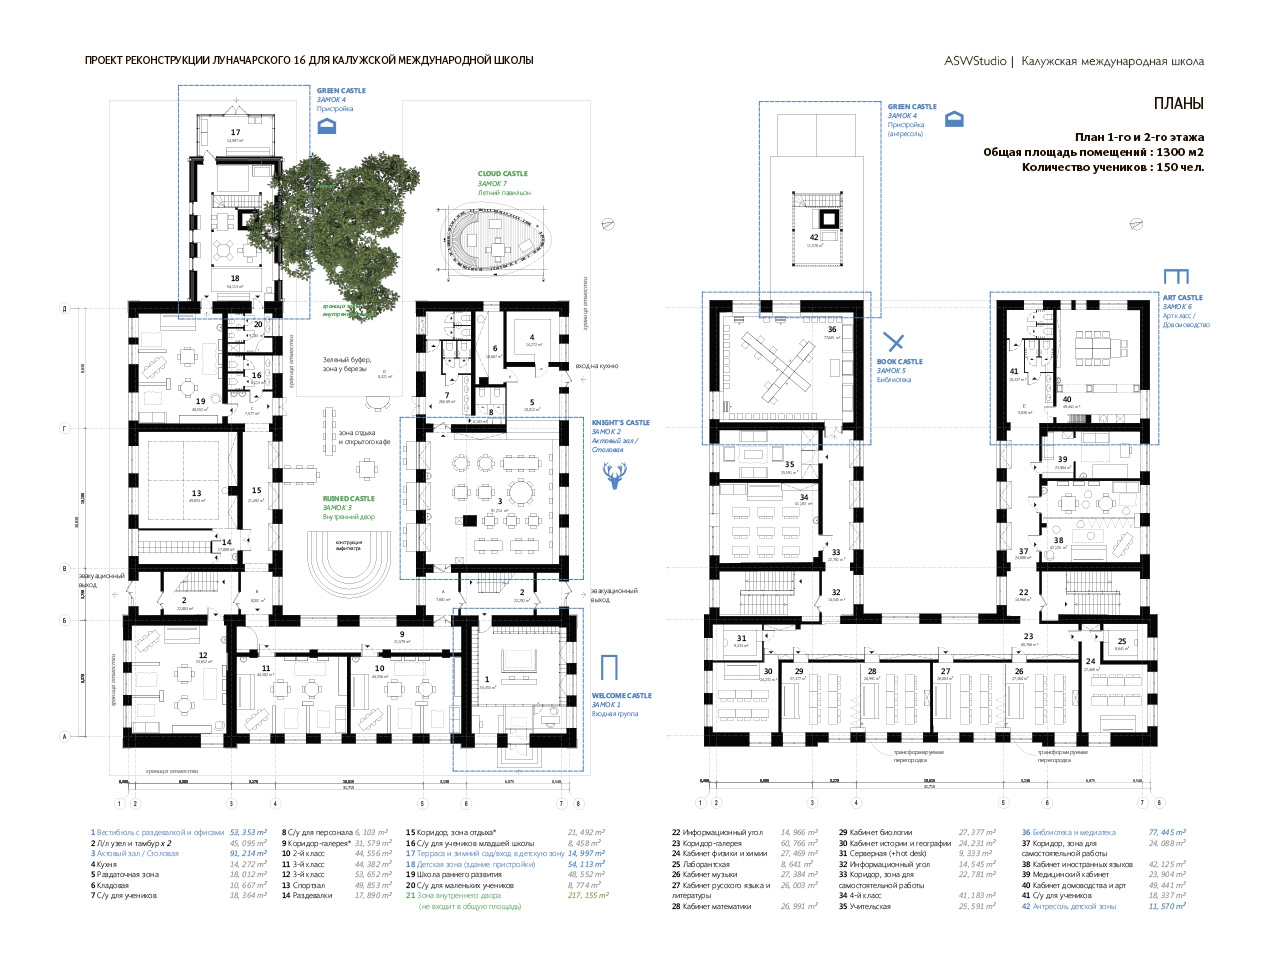 Концепция реконструкции школы в «Семь замков» | ASW Studio